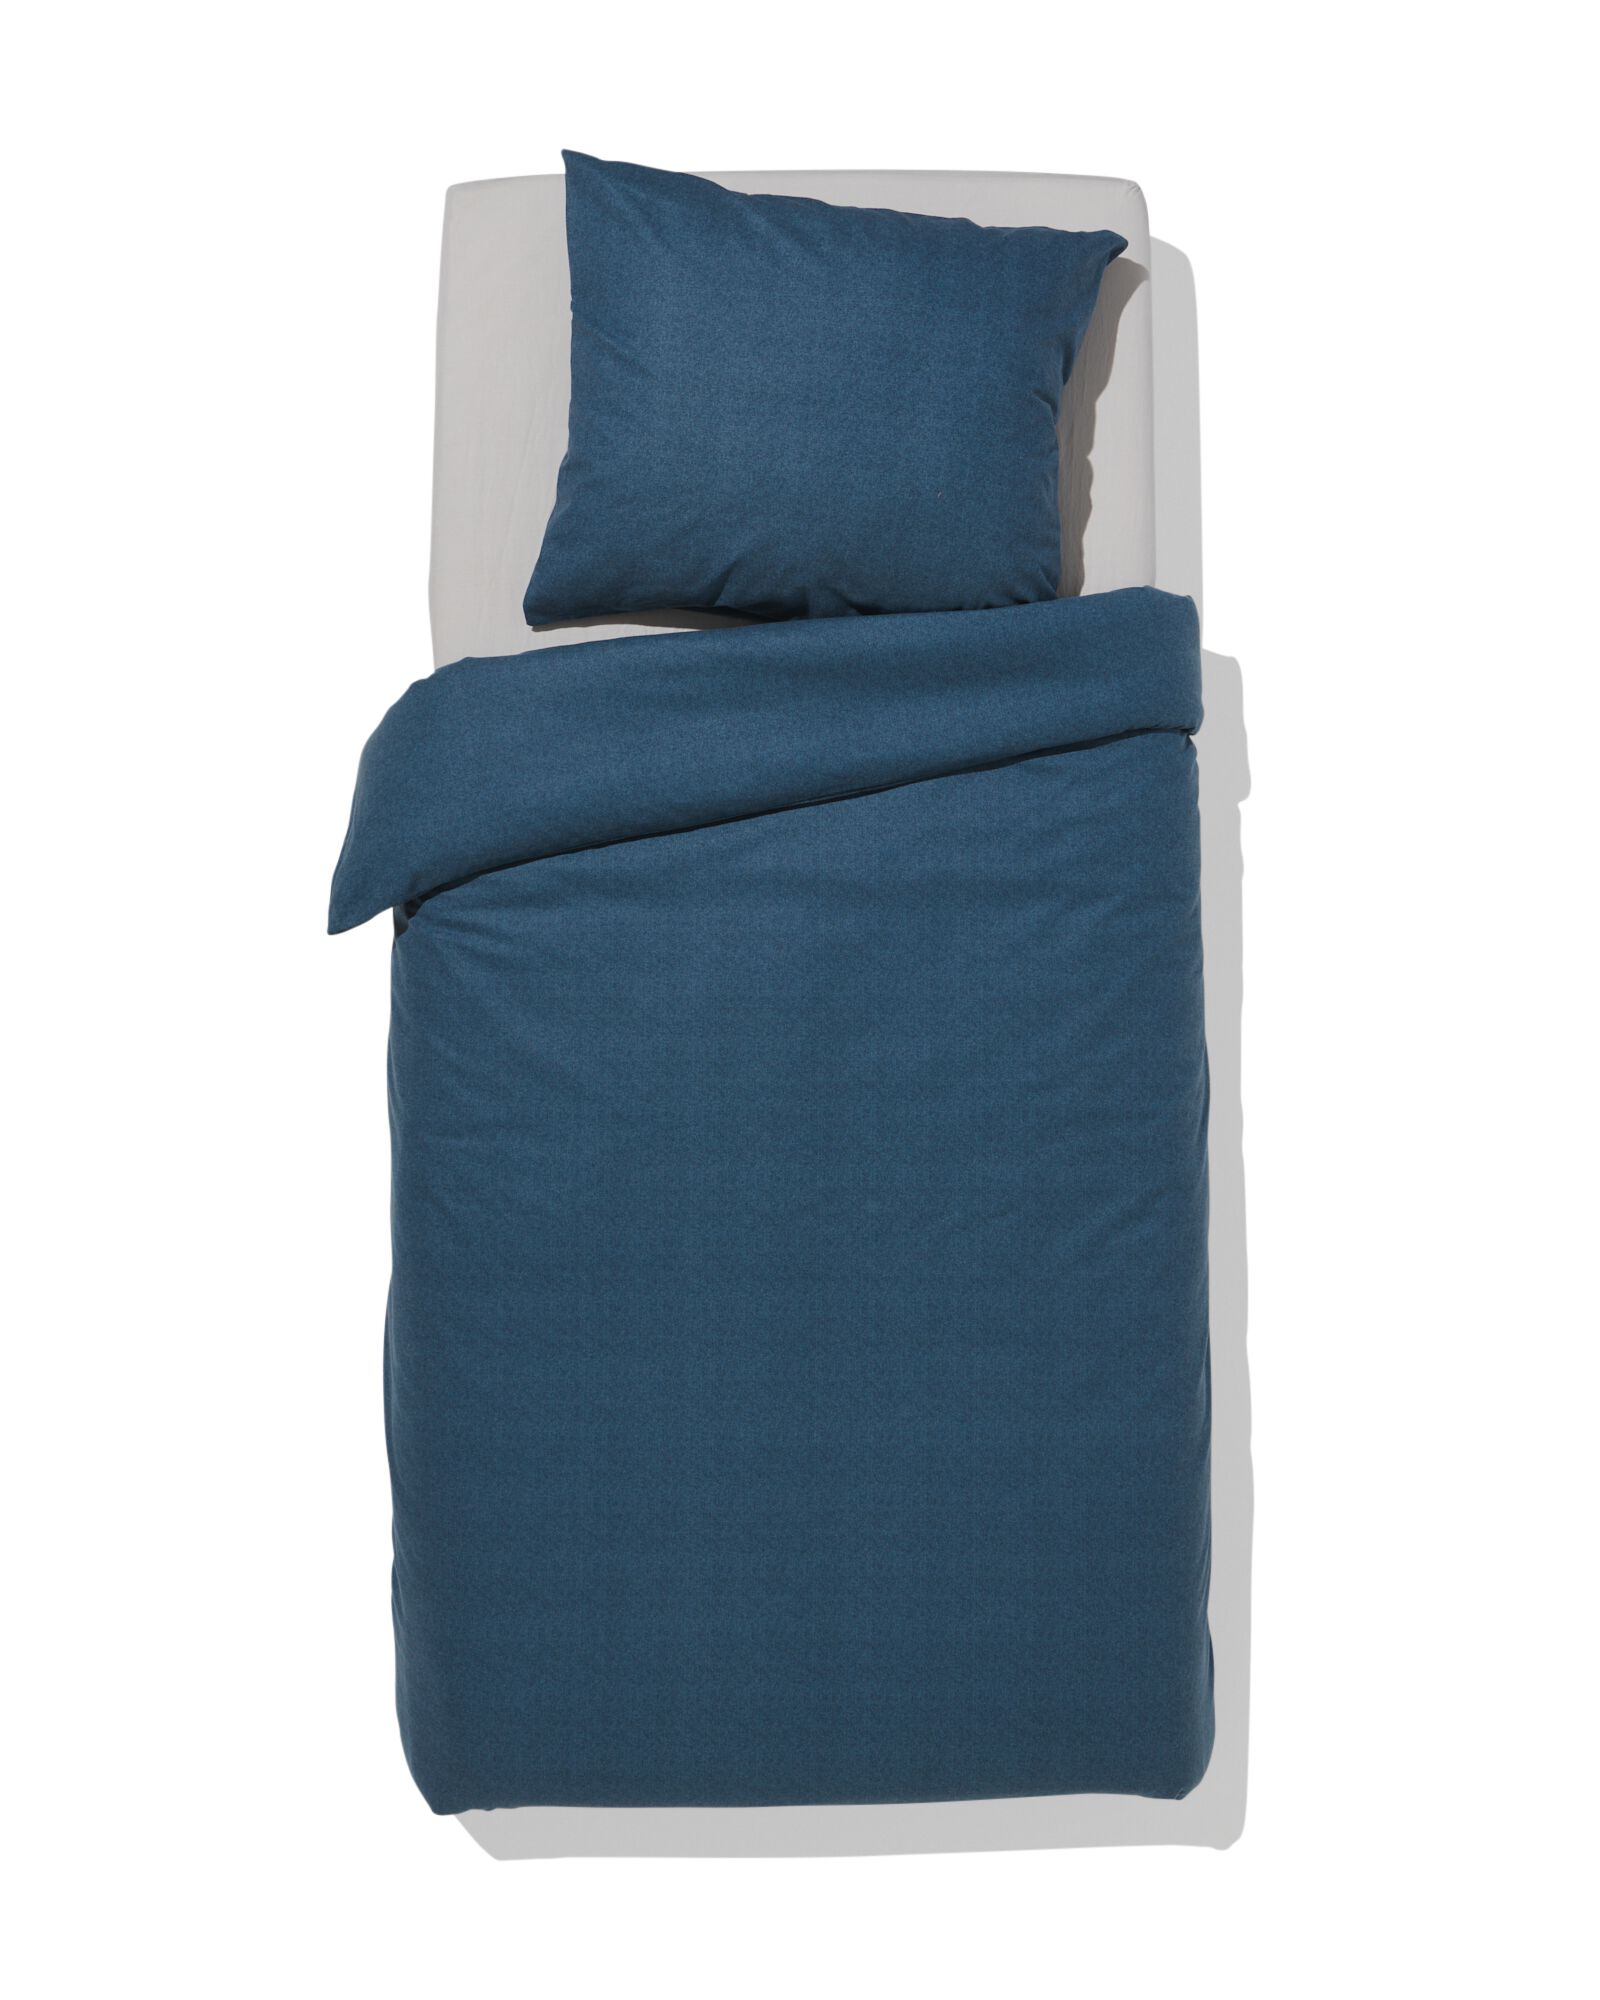 Bettwäsche, Flanell, 140 x 200/220 cm, blaumeliert - 5790314 - HEMA